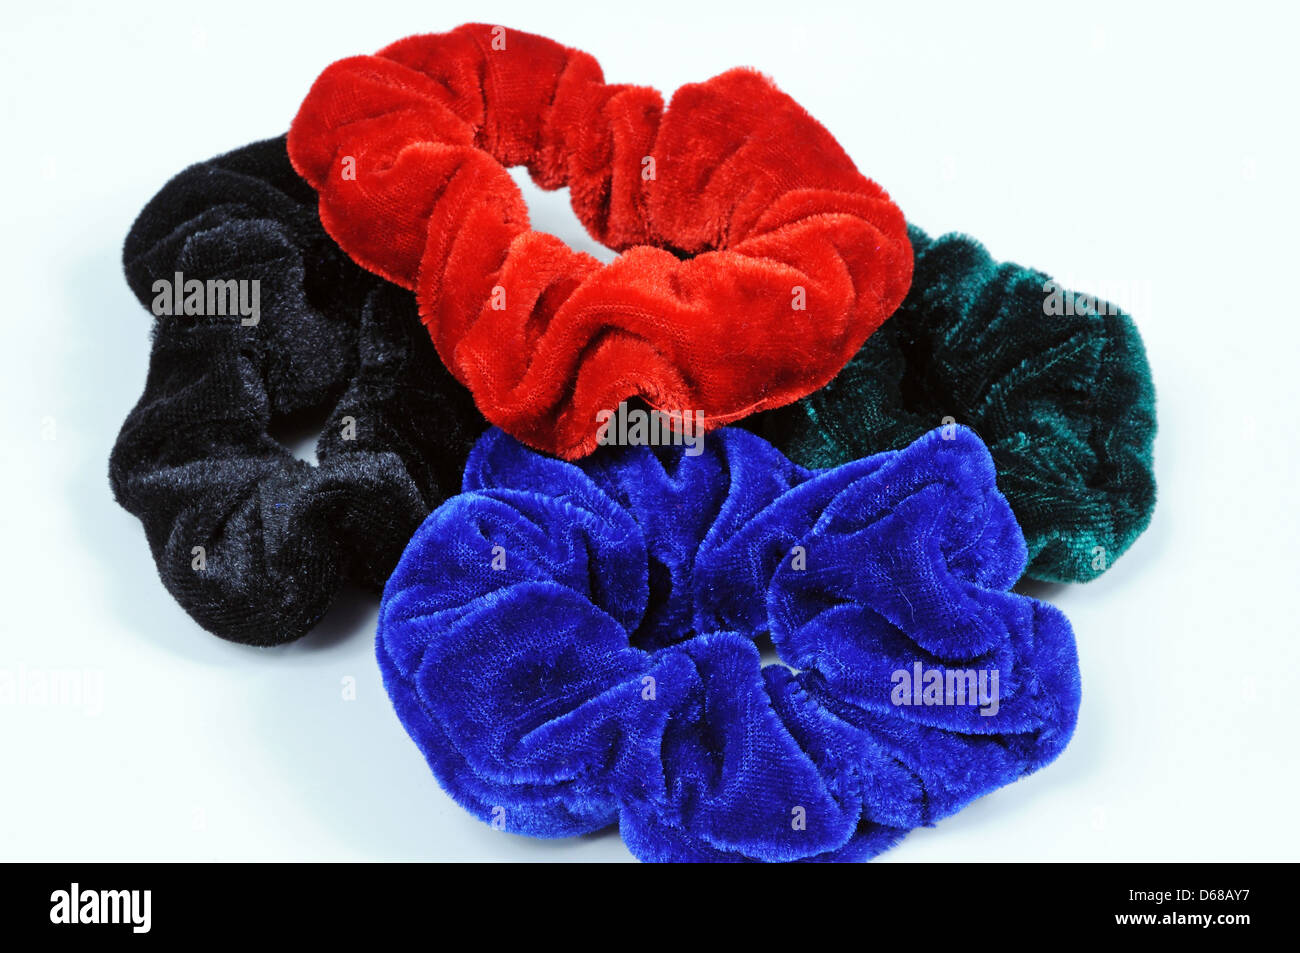 Four velvet hair scrunchies against a white background. Stock Photo